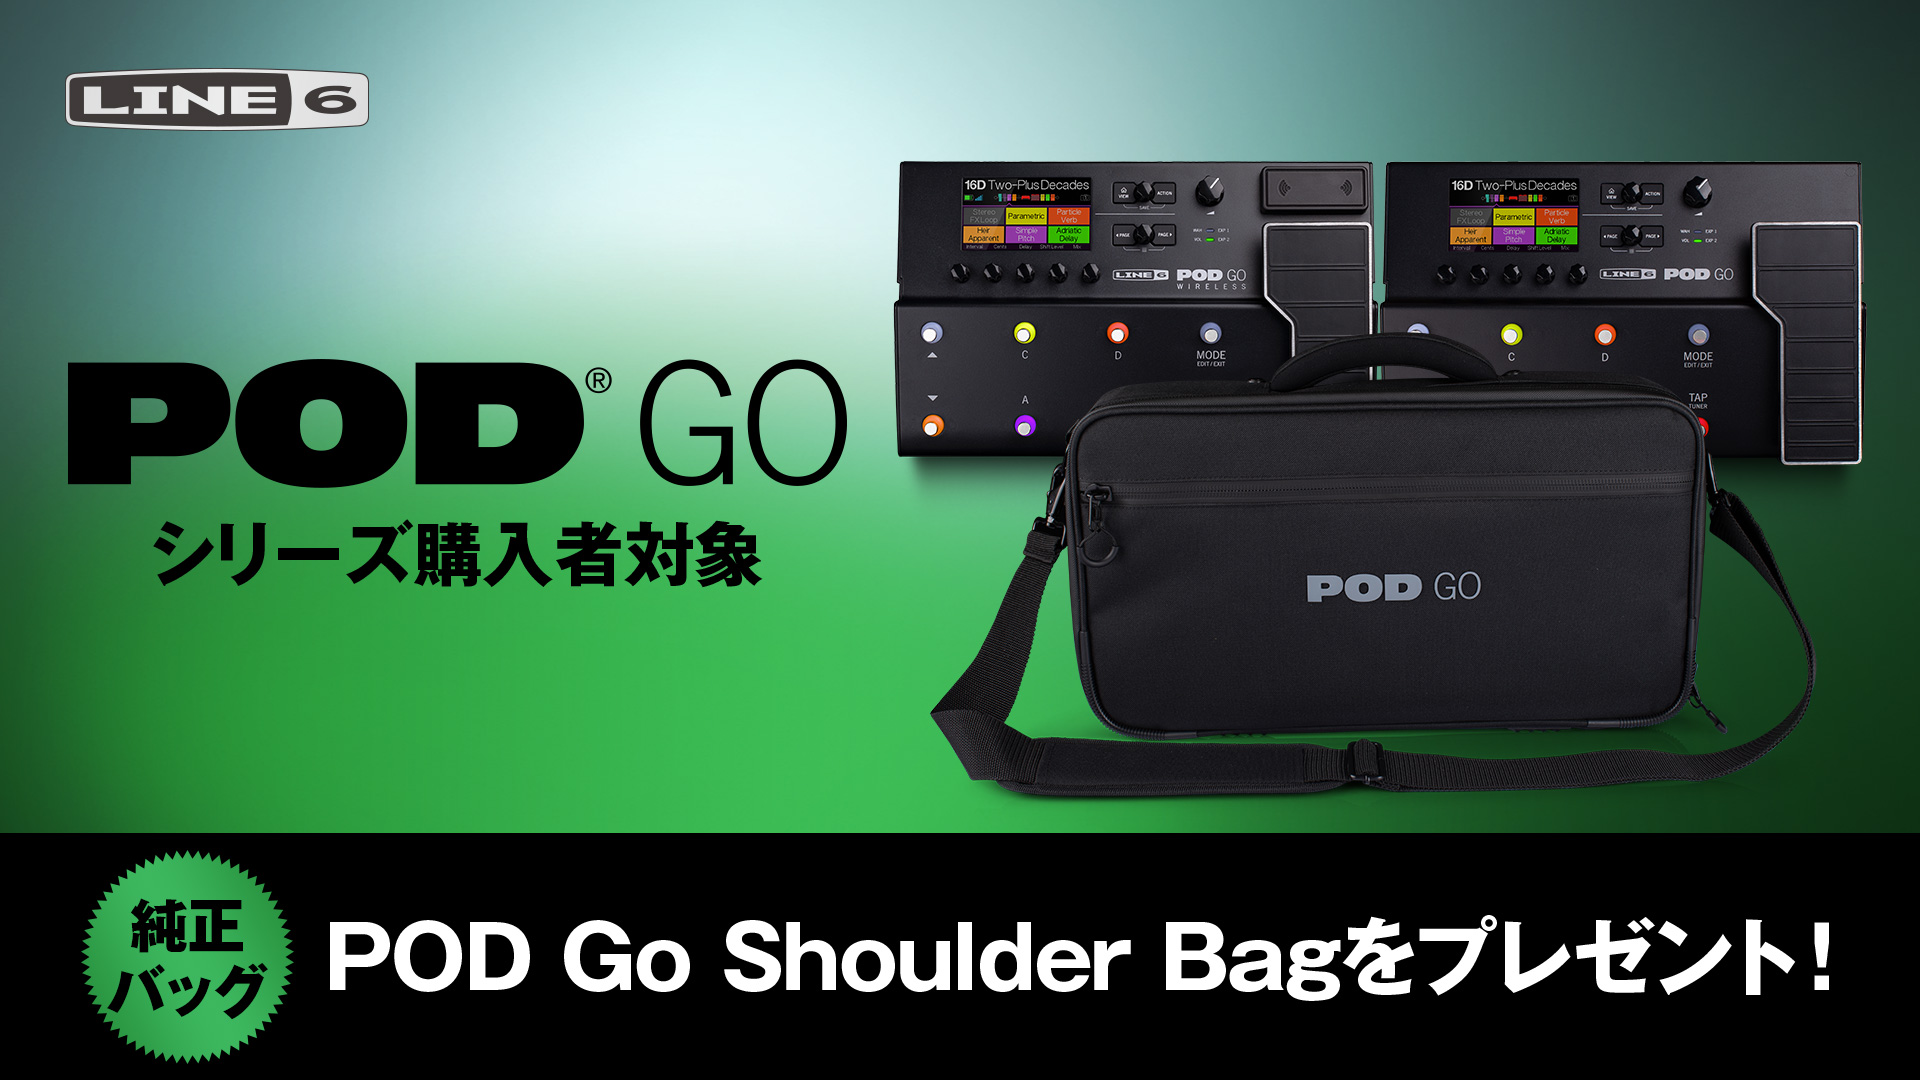 LINE6 POD Go Shoulder Bagプレゼント・キャンペーン【イシバシ楽器】